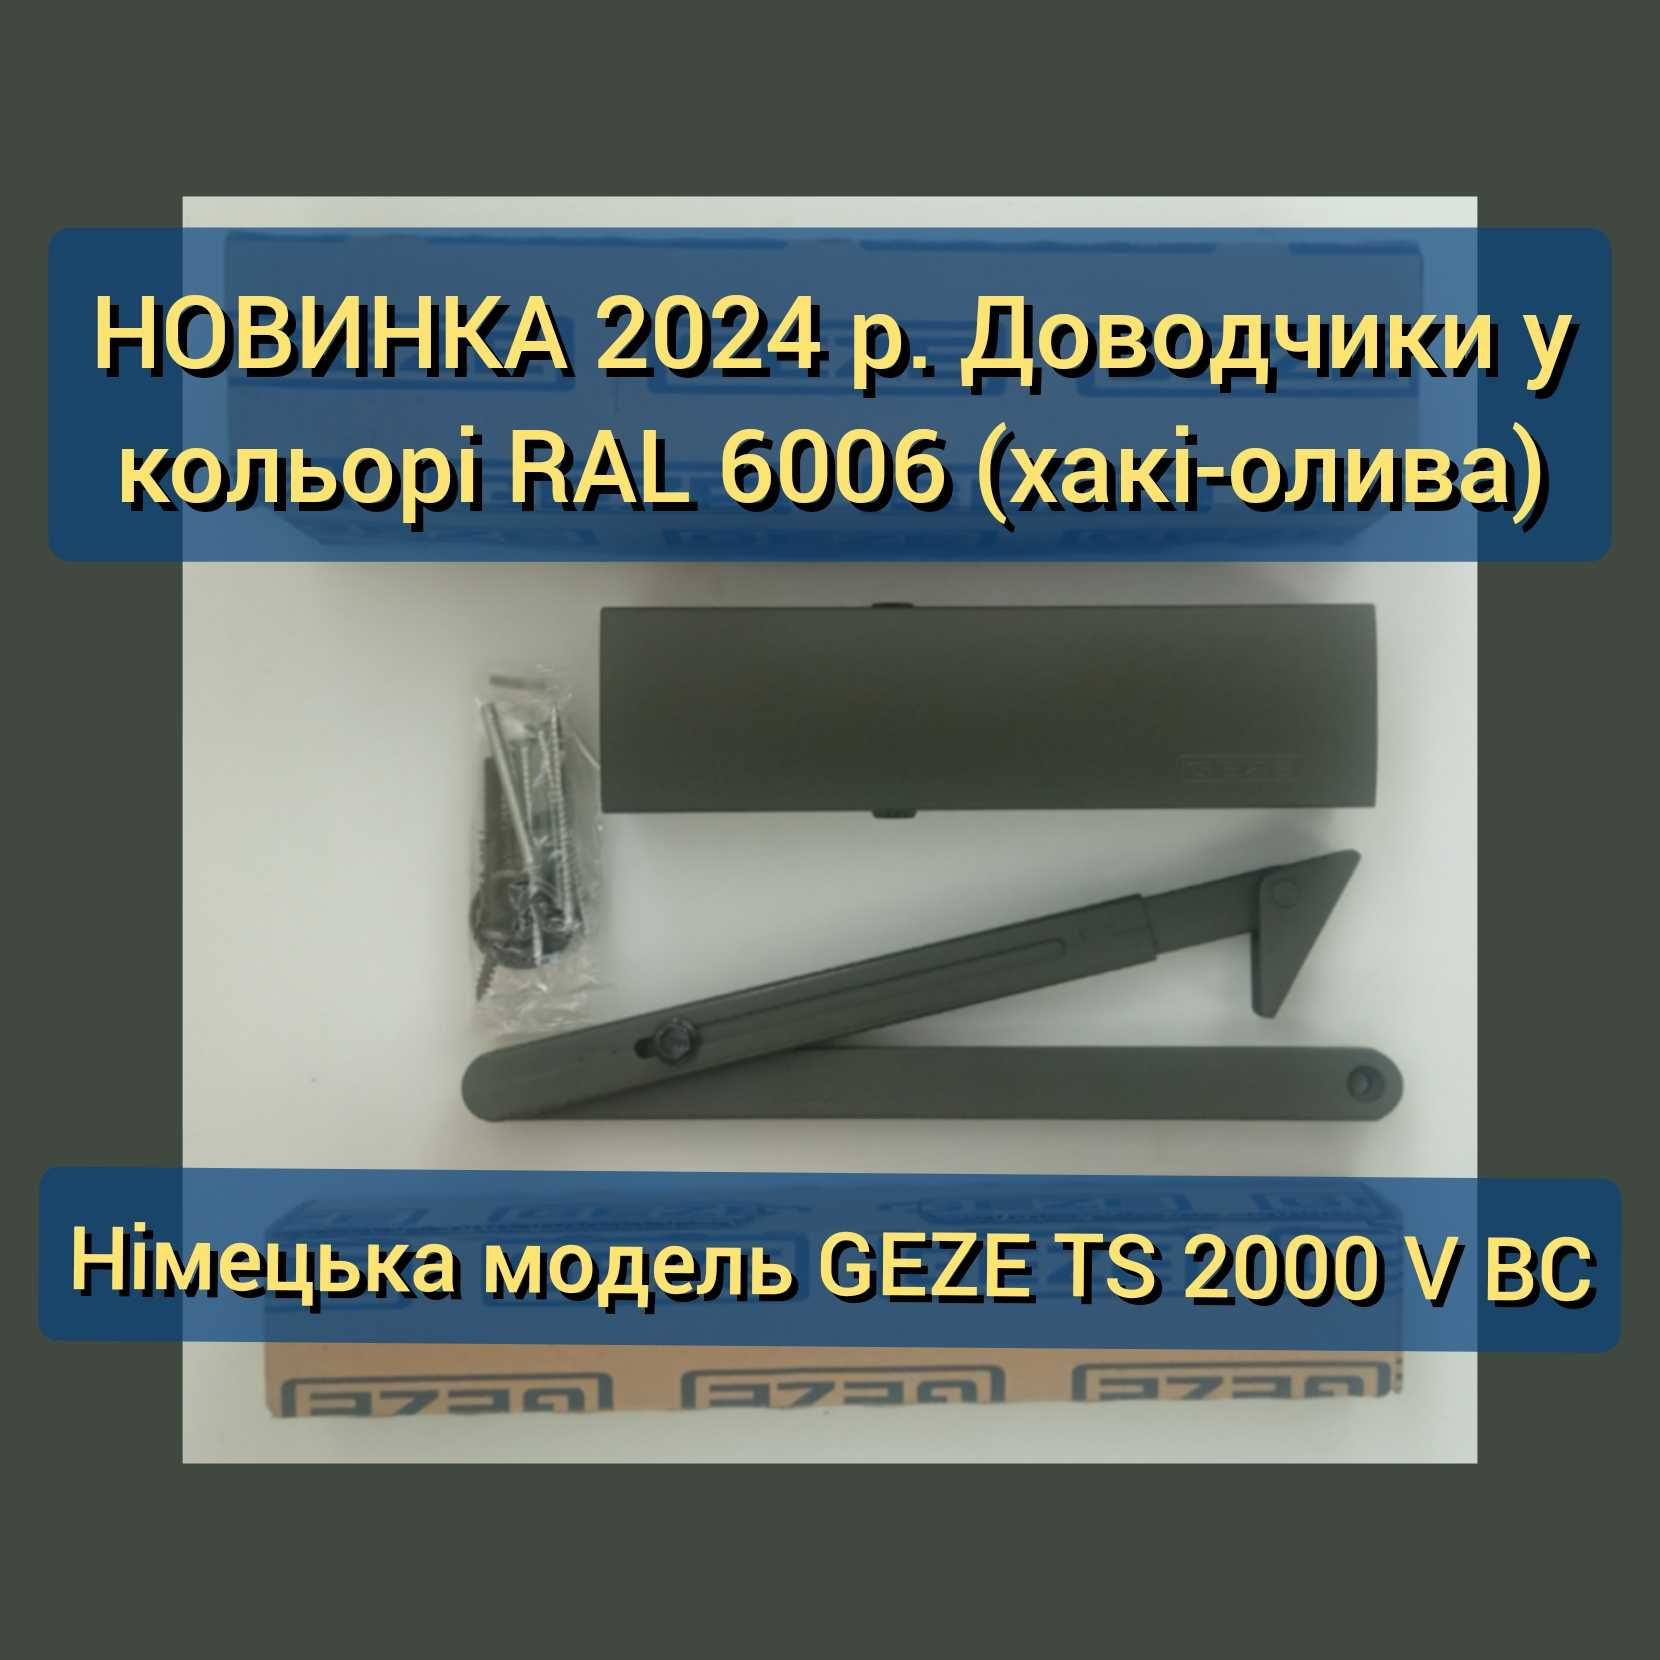 НОВИНКА 2024 р. Доводчики RAL 6006 (хакі-олива) – GEZE TS 2000 V ВС.